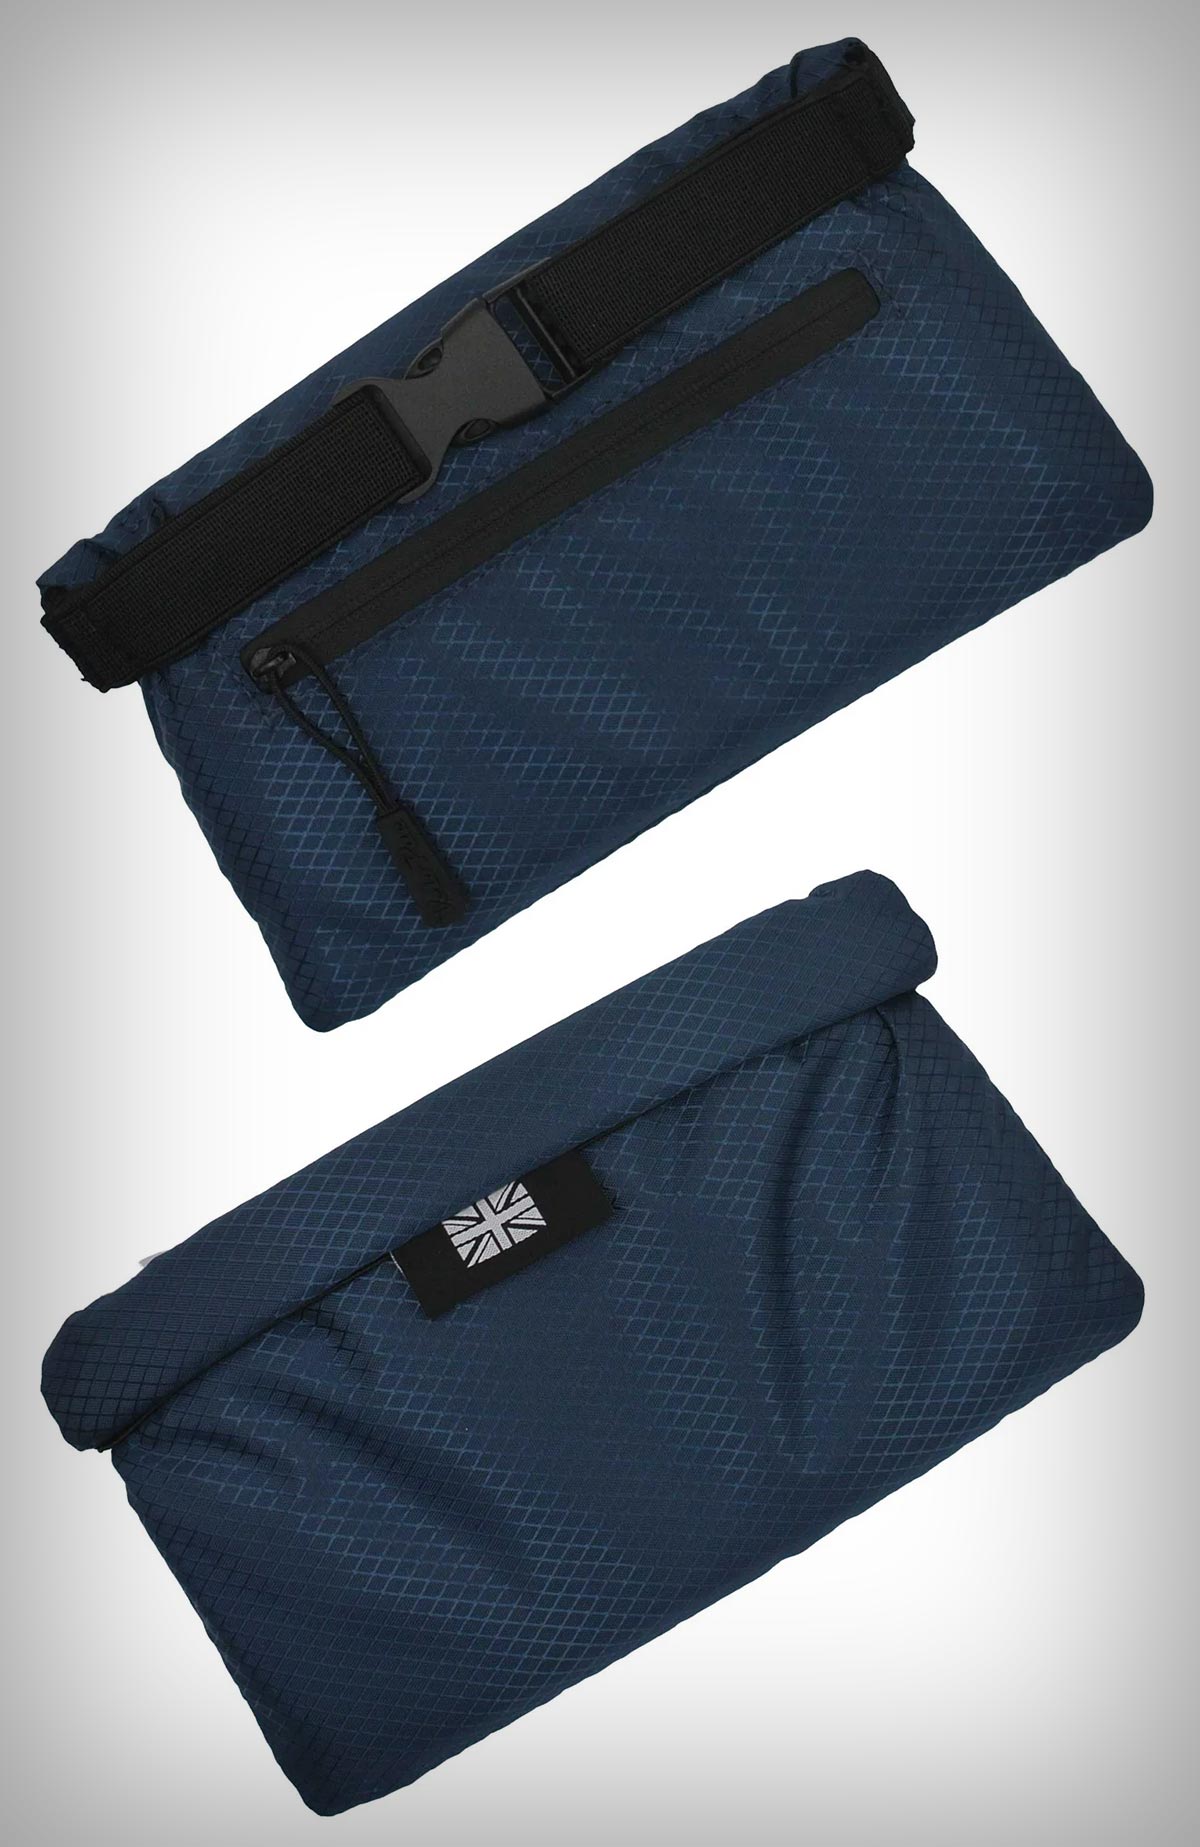 VeloPac RidePac Útil Pro, la versión mejorada de una bolsa impermeable de bolsillo para llevar todo lo necesario